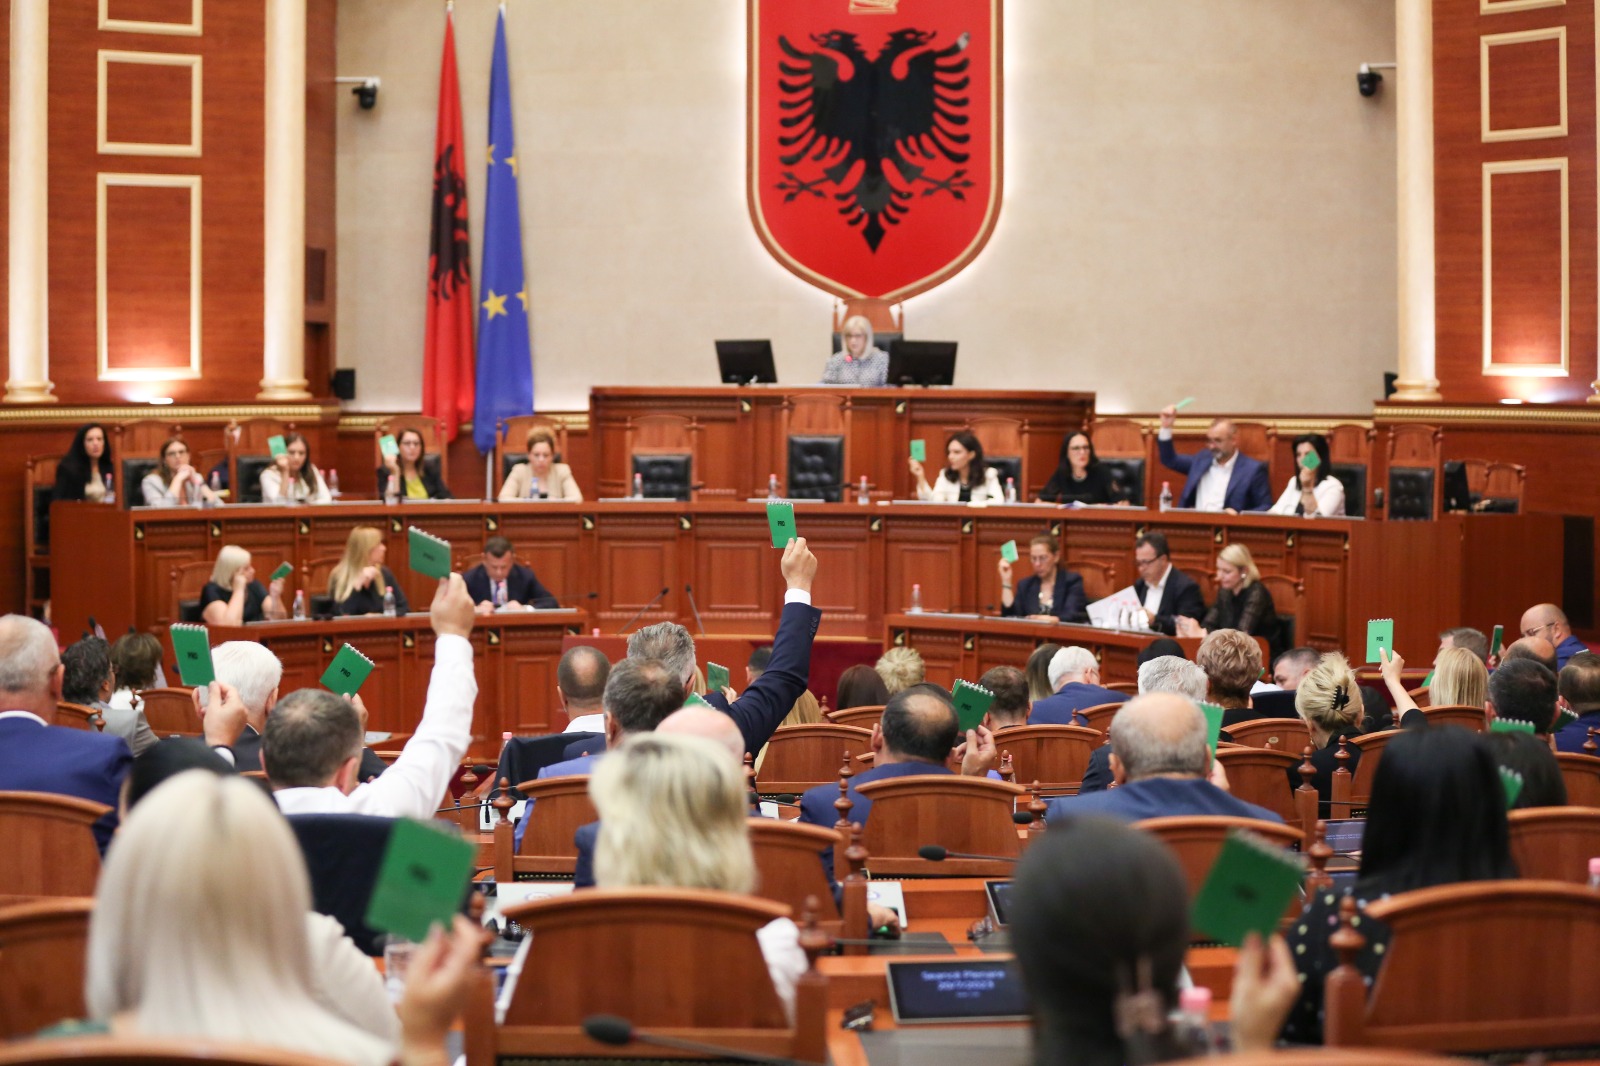 Miratohet kanabisi mjekësor/ Votohet edhe ligji për mjekët e rinj, do punojnë 5 vite pas studimeve në Shqipëri